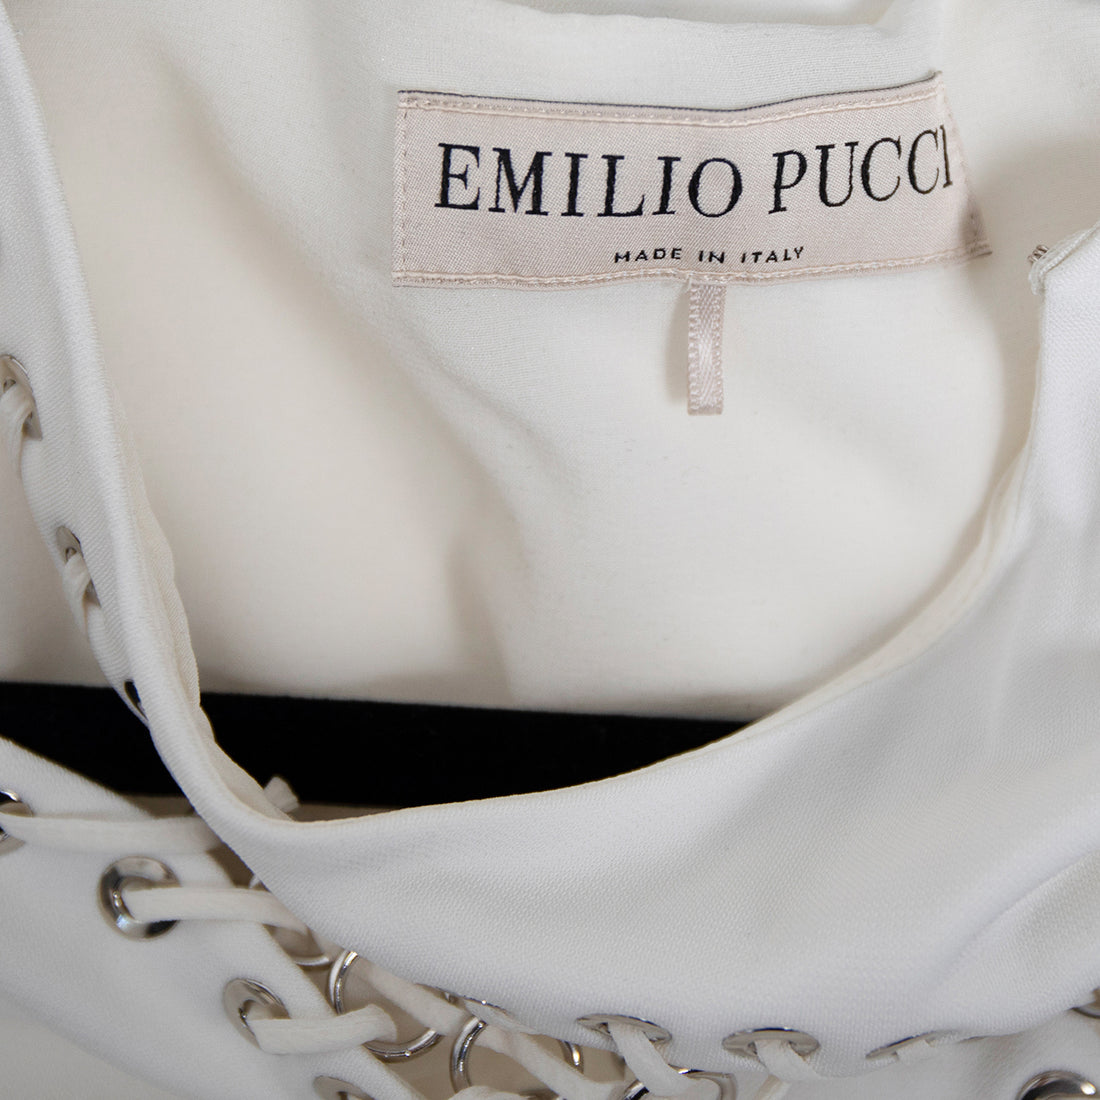 Emilio Pucci Abendkleid mit Cut-Out Details an der Schulter